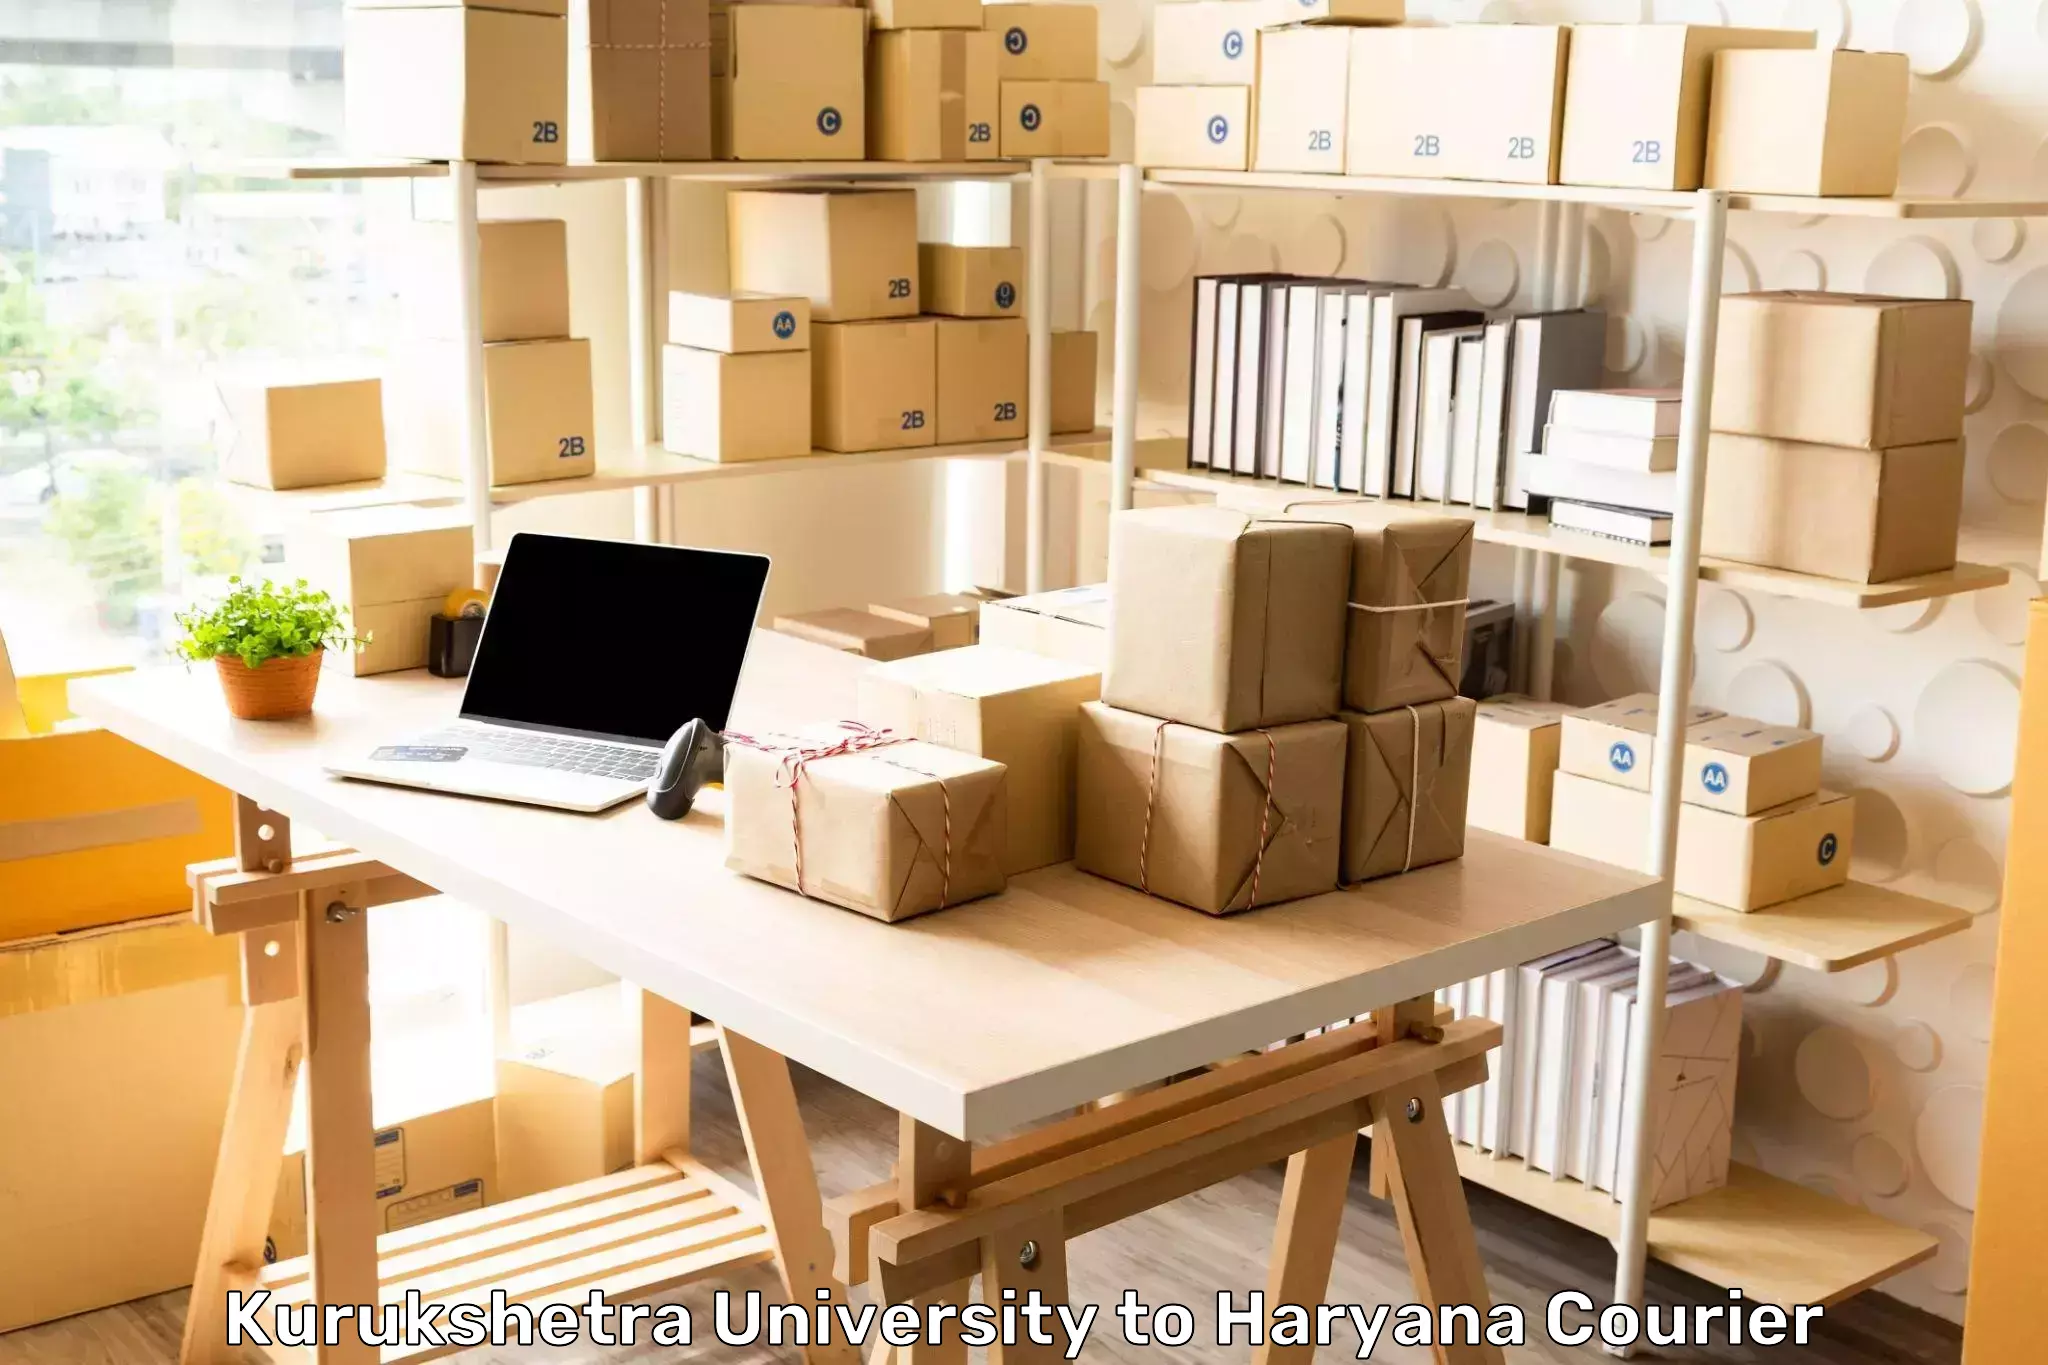 Package tracking Kurukshetra University to Haryana